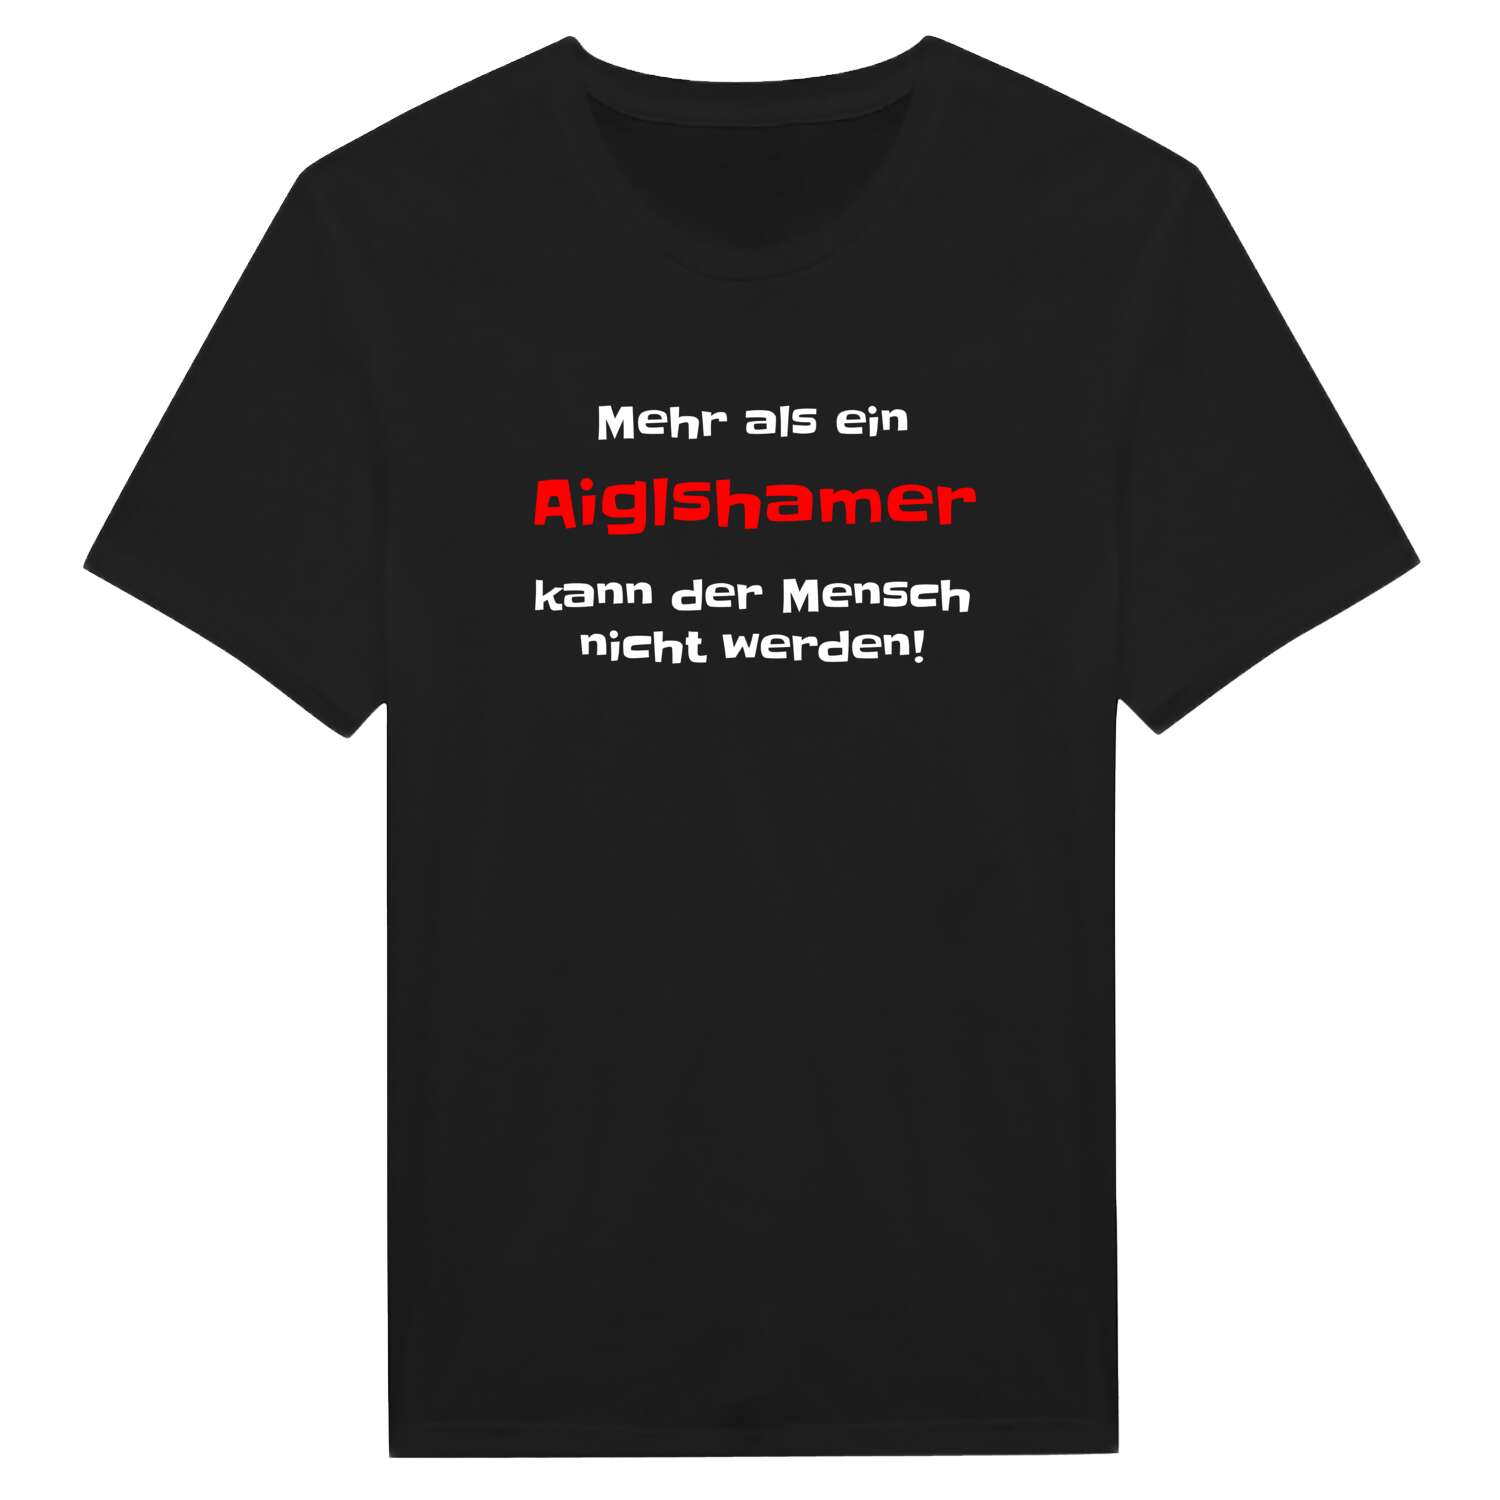 Aiglsham T-Shirt »Mehr als ein«